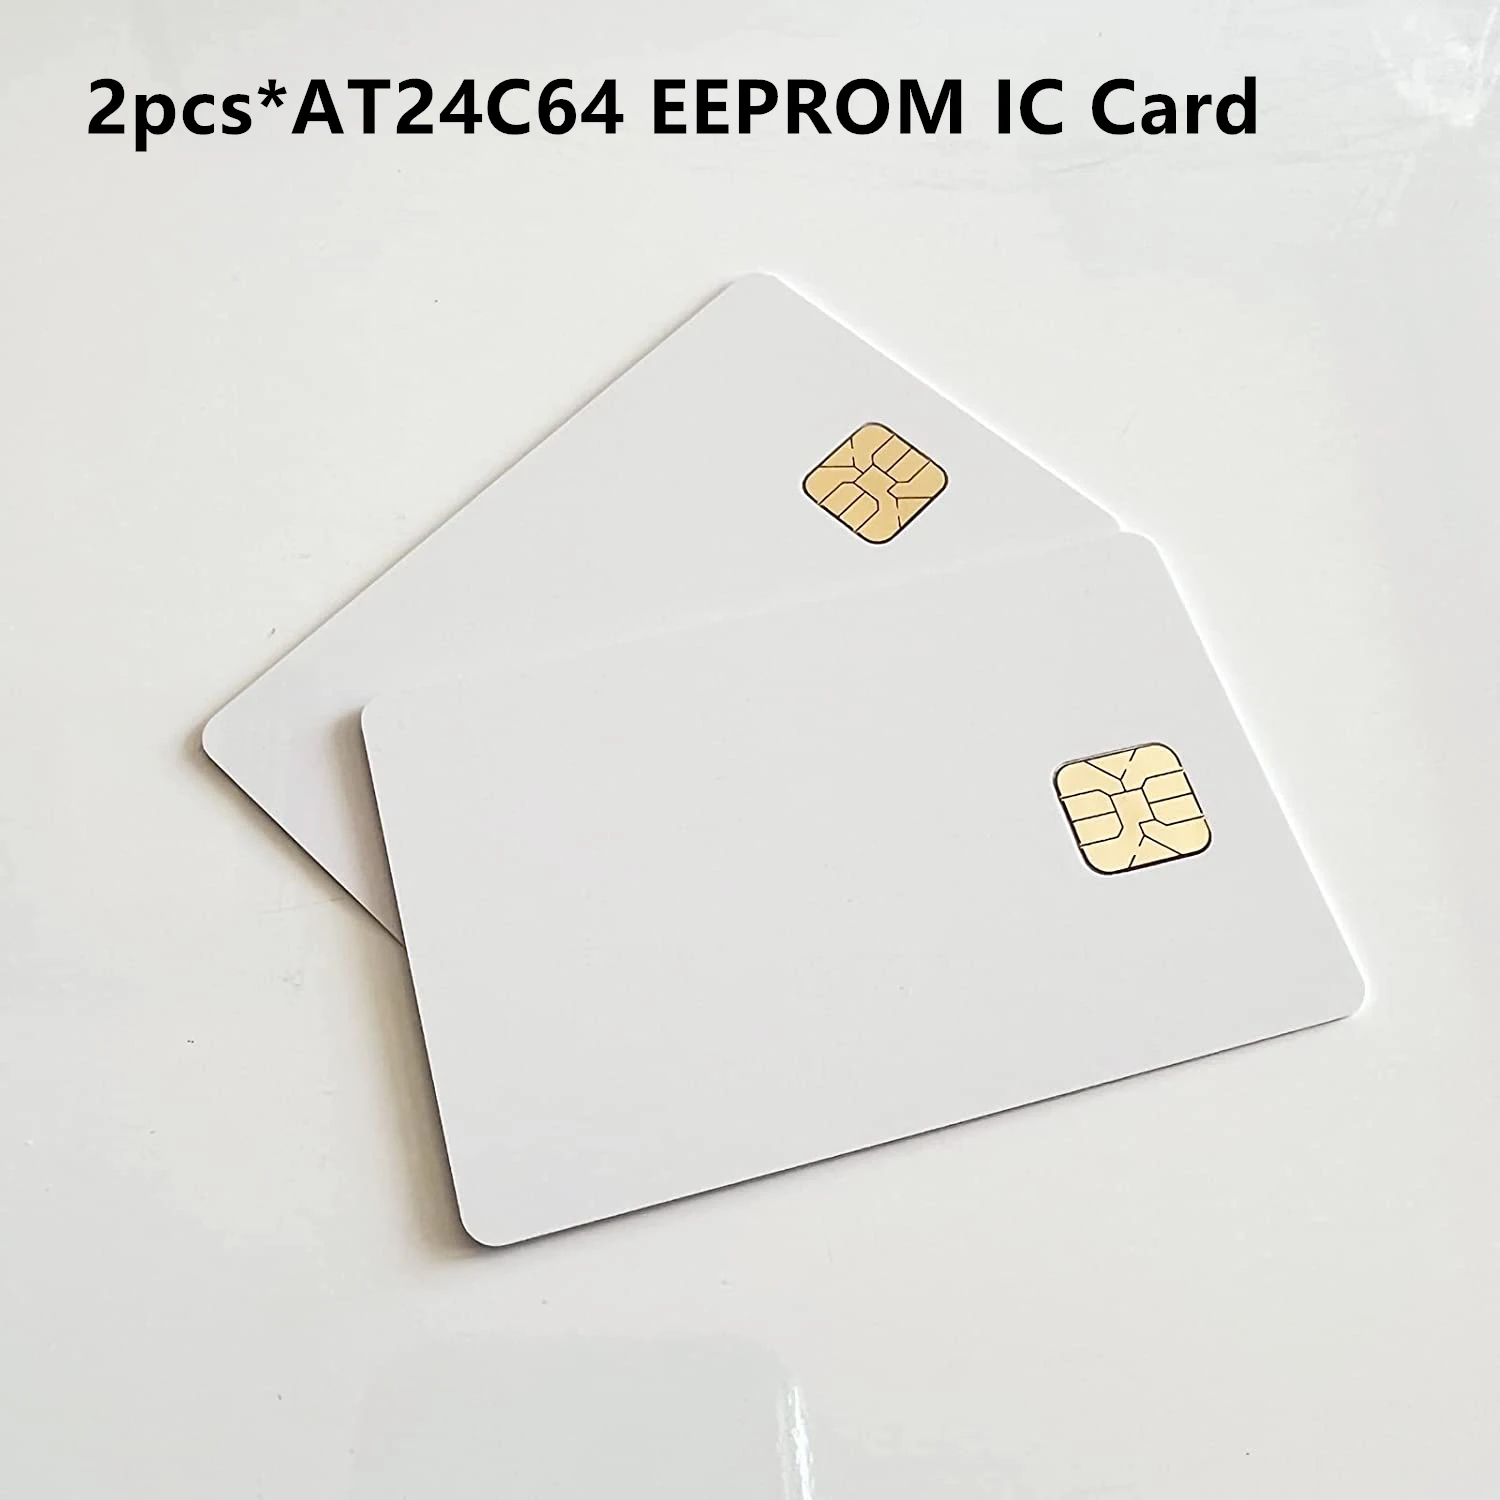 Tanie 2 sztuk AT24C64 ISO7816 Smartcard bezpieczna pamięć 24C64 duży układ